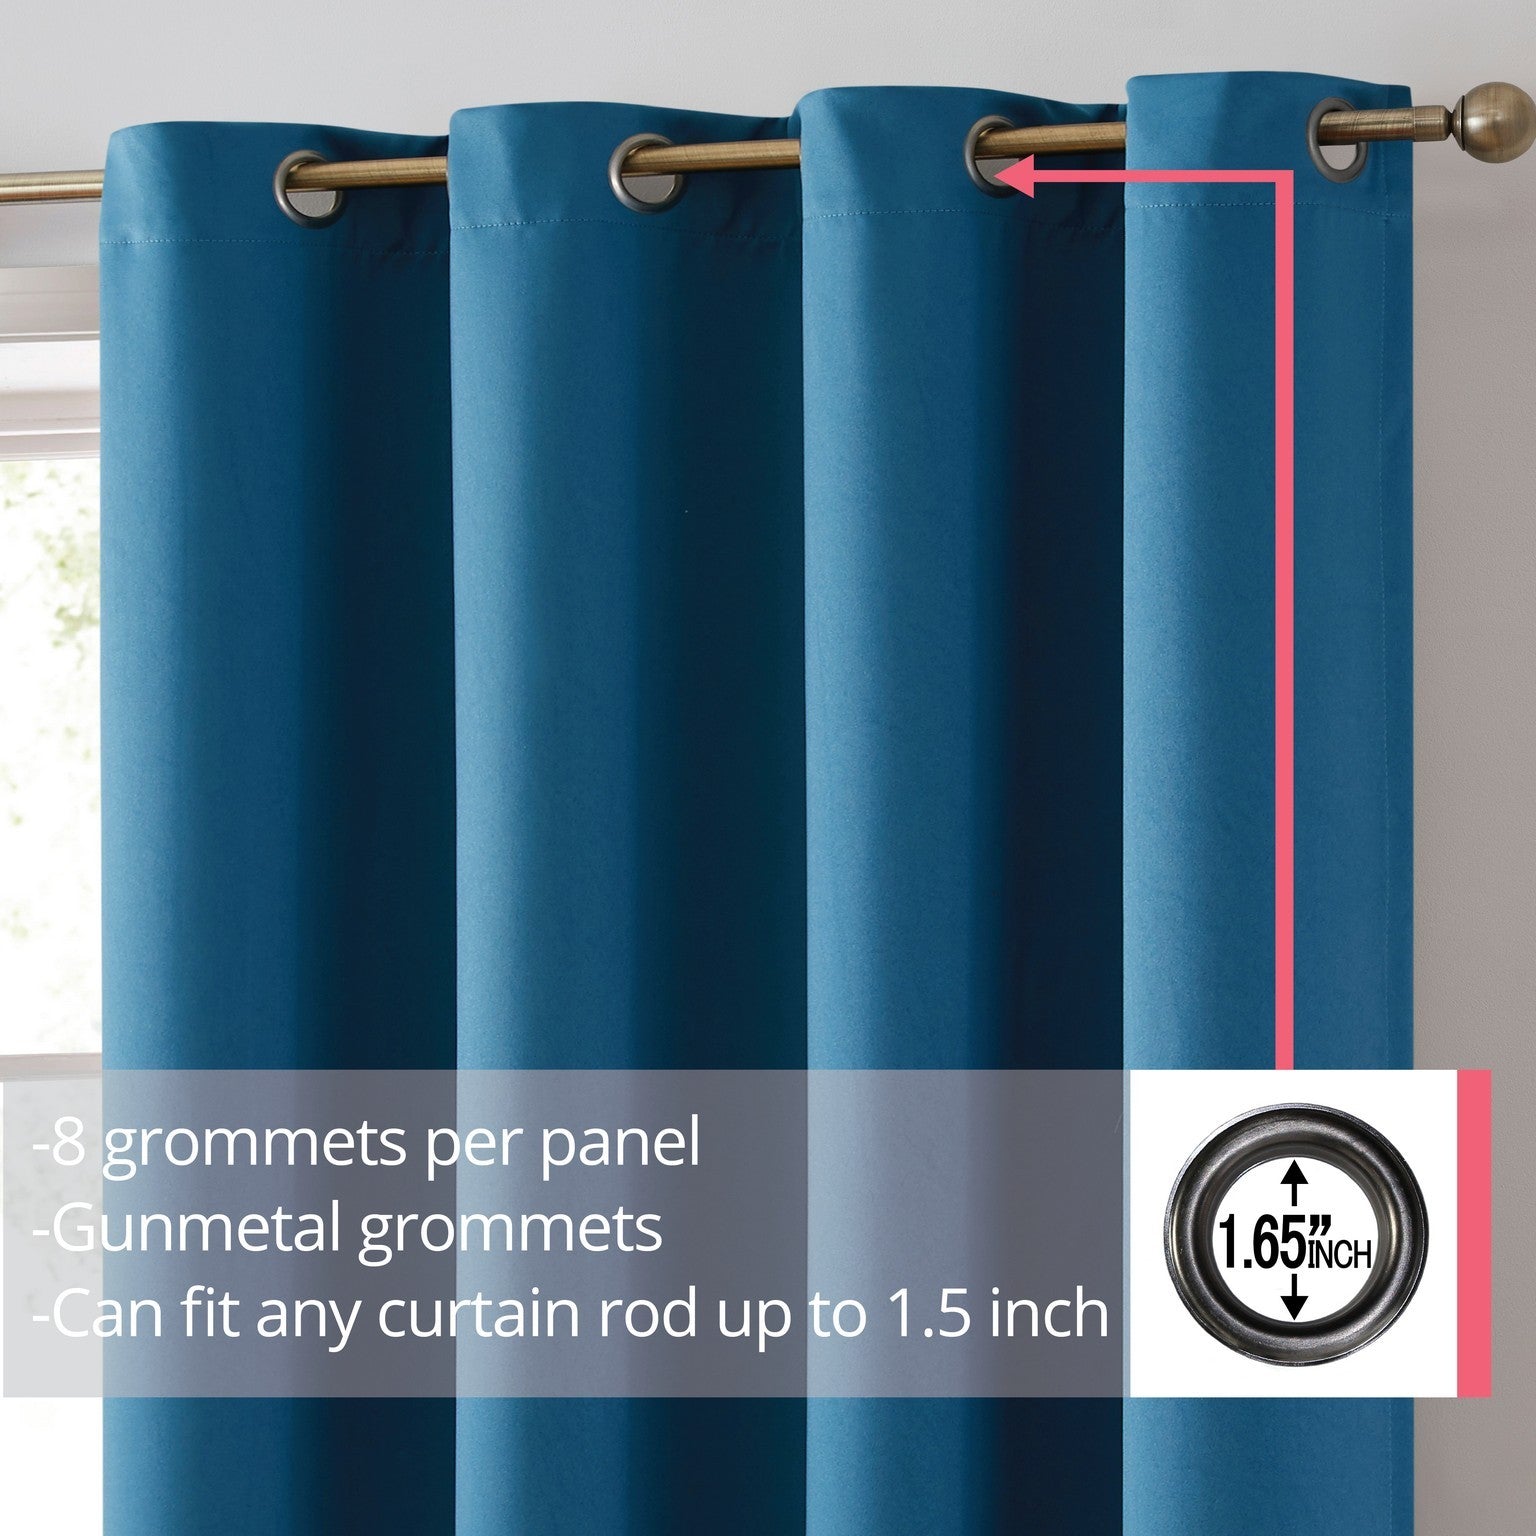 Laurance 100% Blackout Grommet Curtain Panels